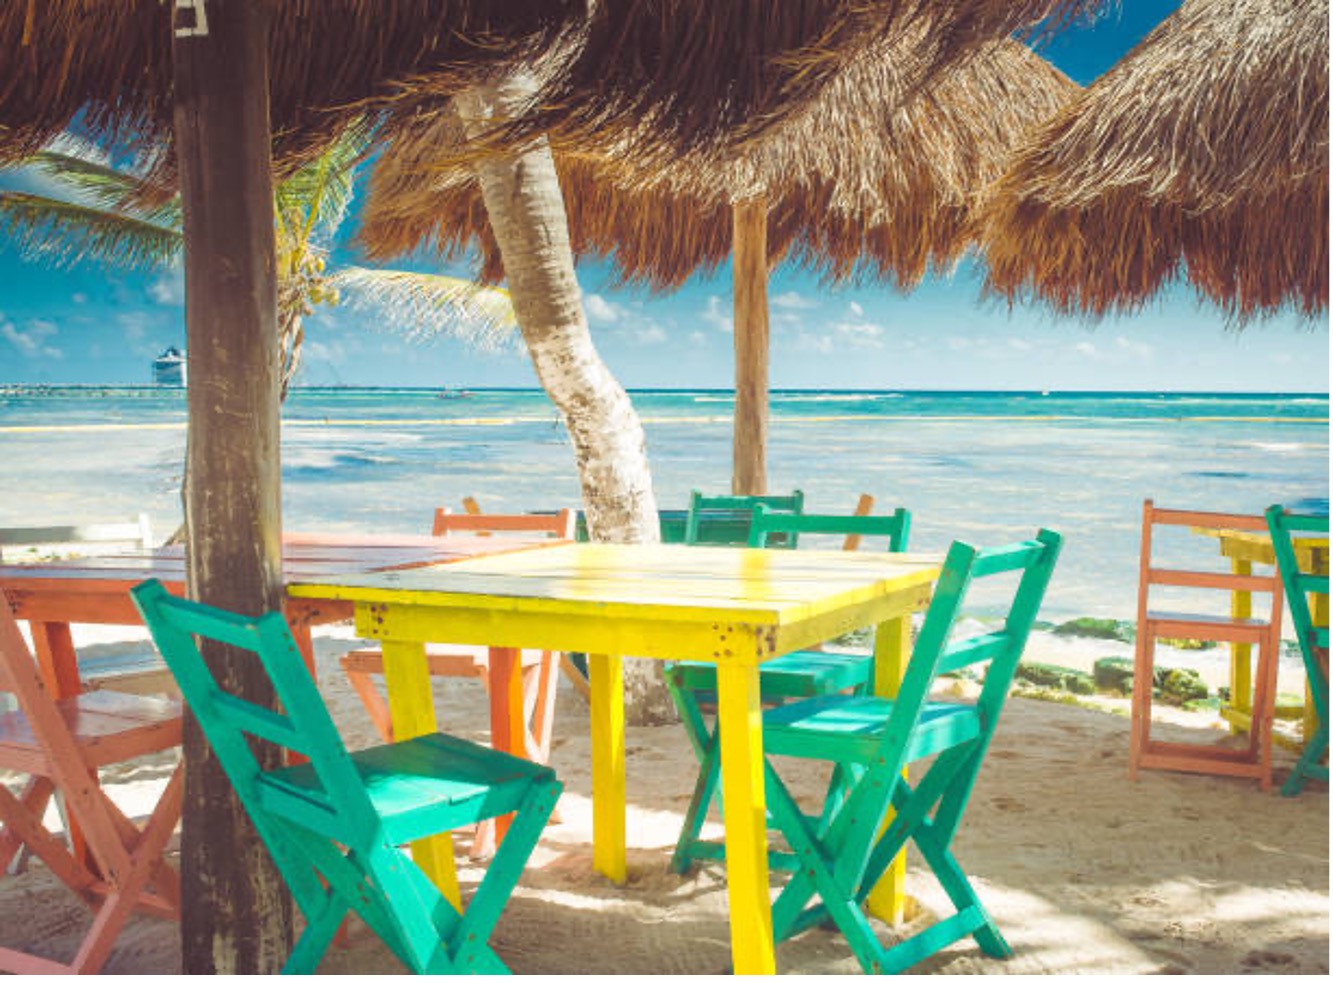 Florida-colorful-beach-chairs.jpg